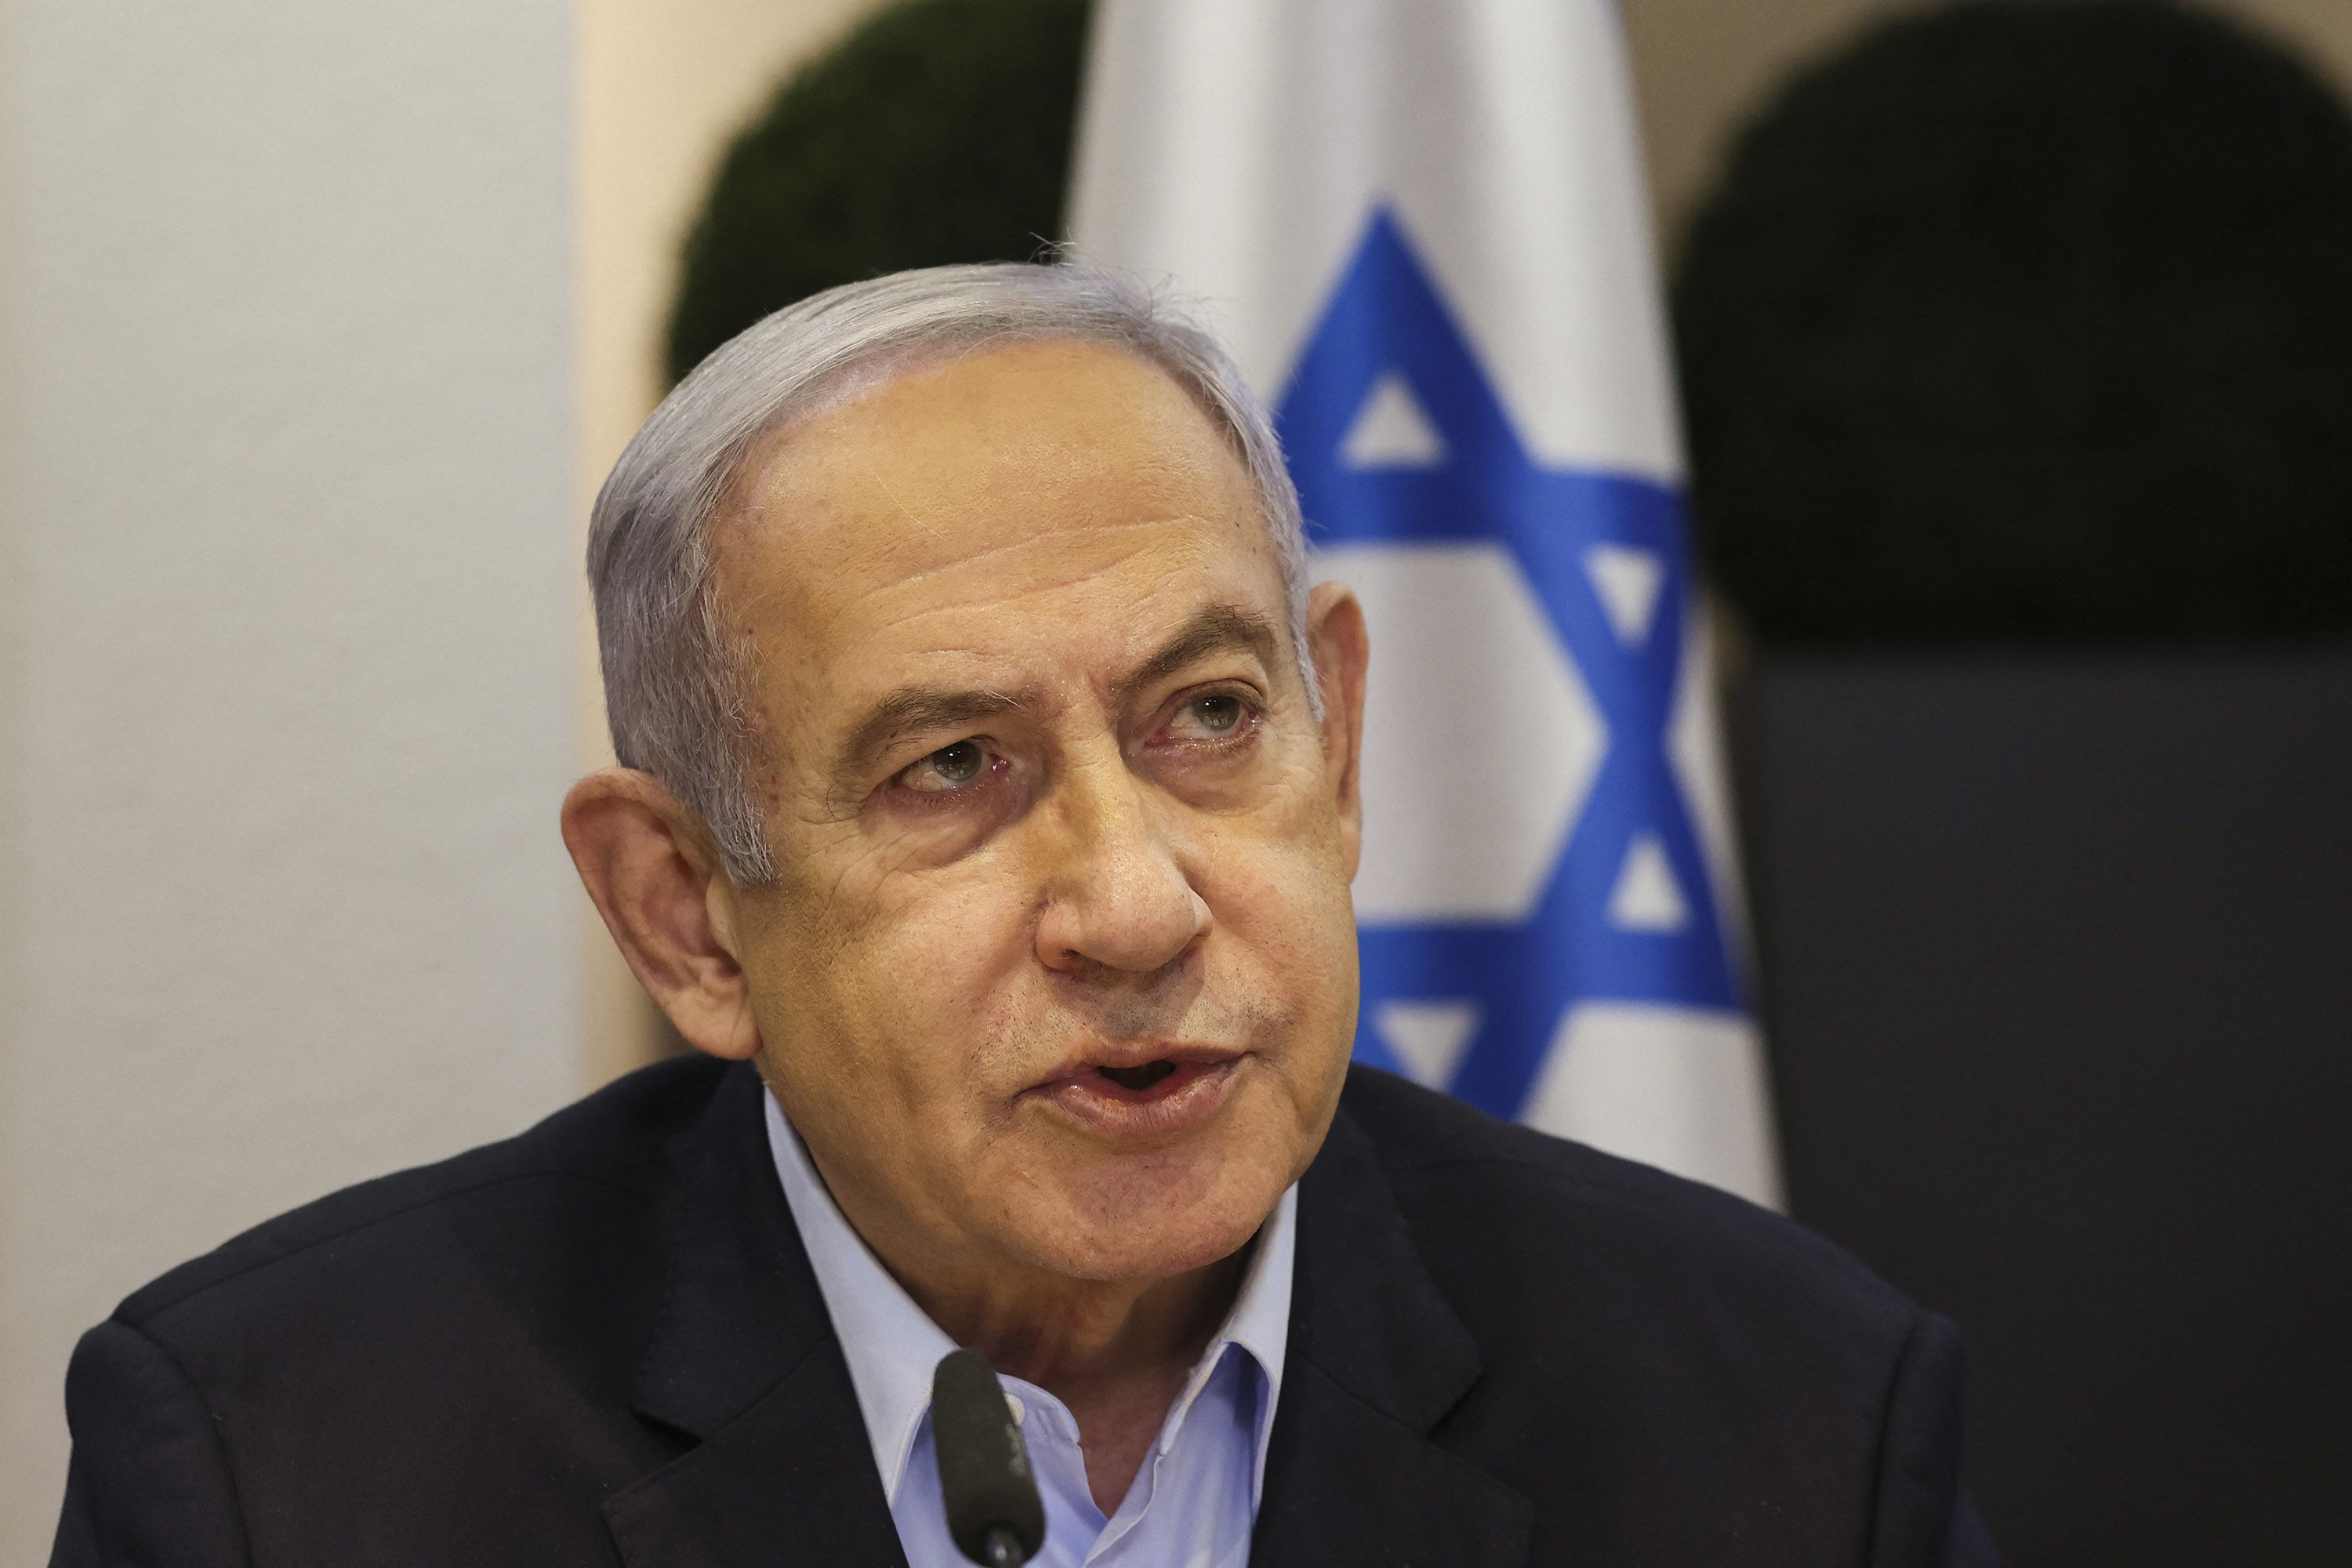 باحثة إسرائيلية: نهاية نتانياهو تلوح في الأفق في لحظة محورية للشرق الأوسط